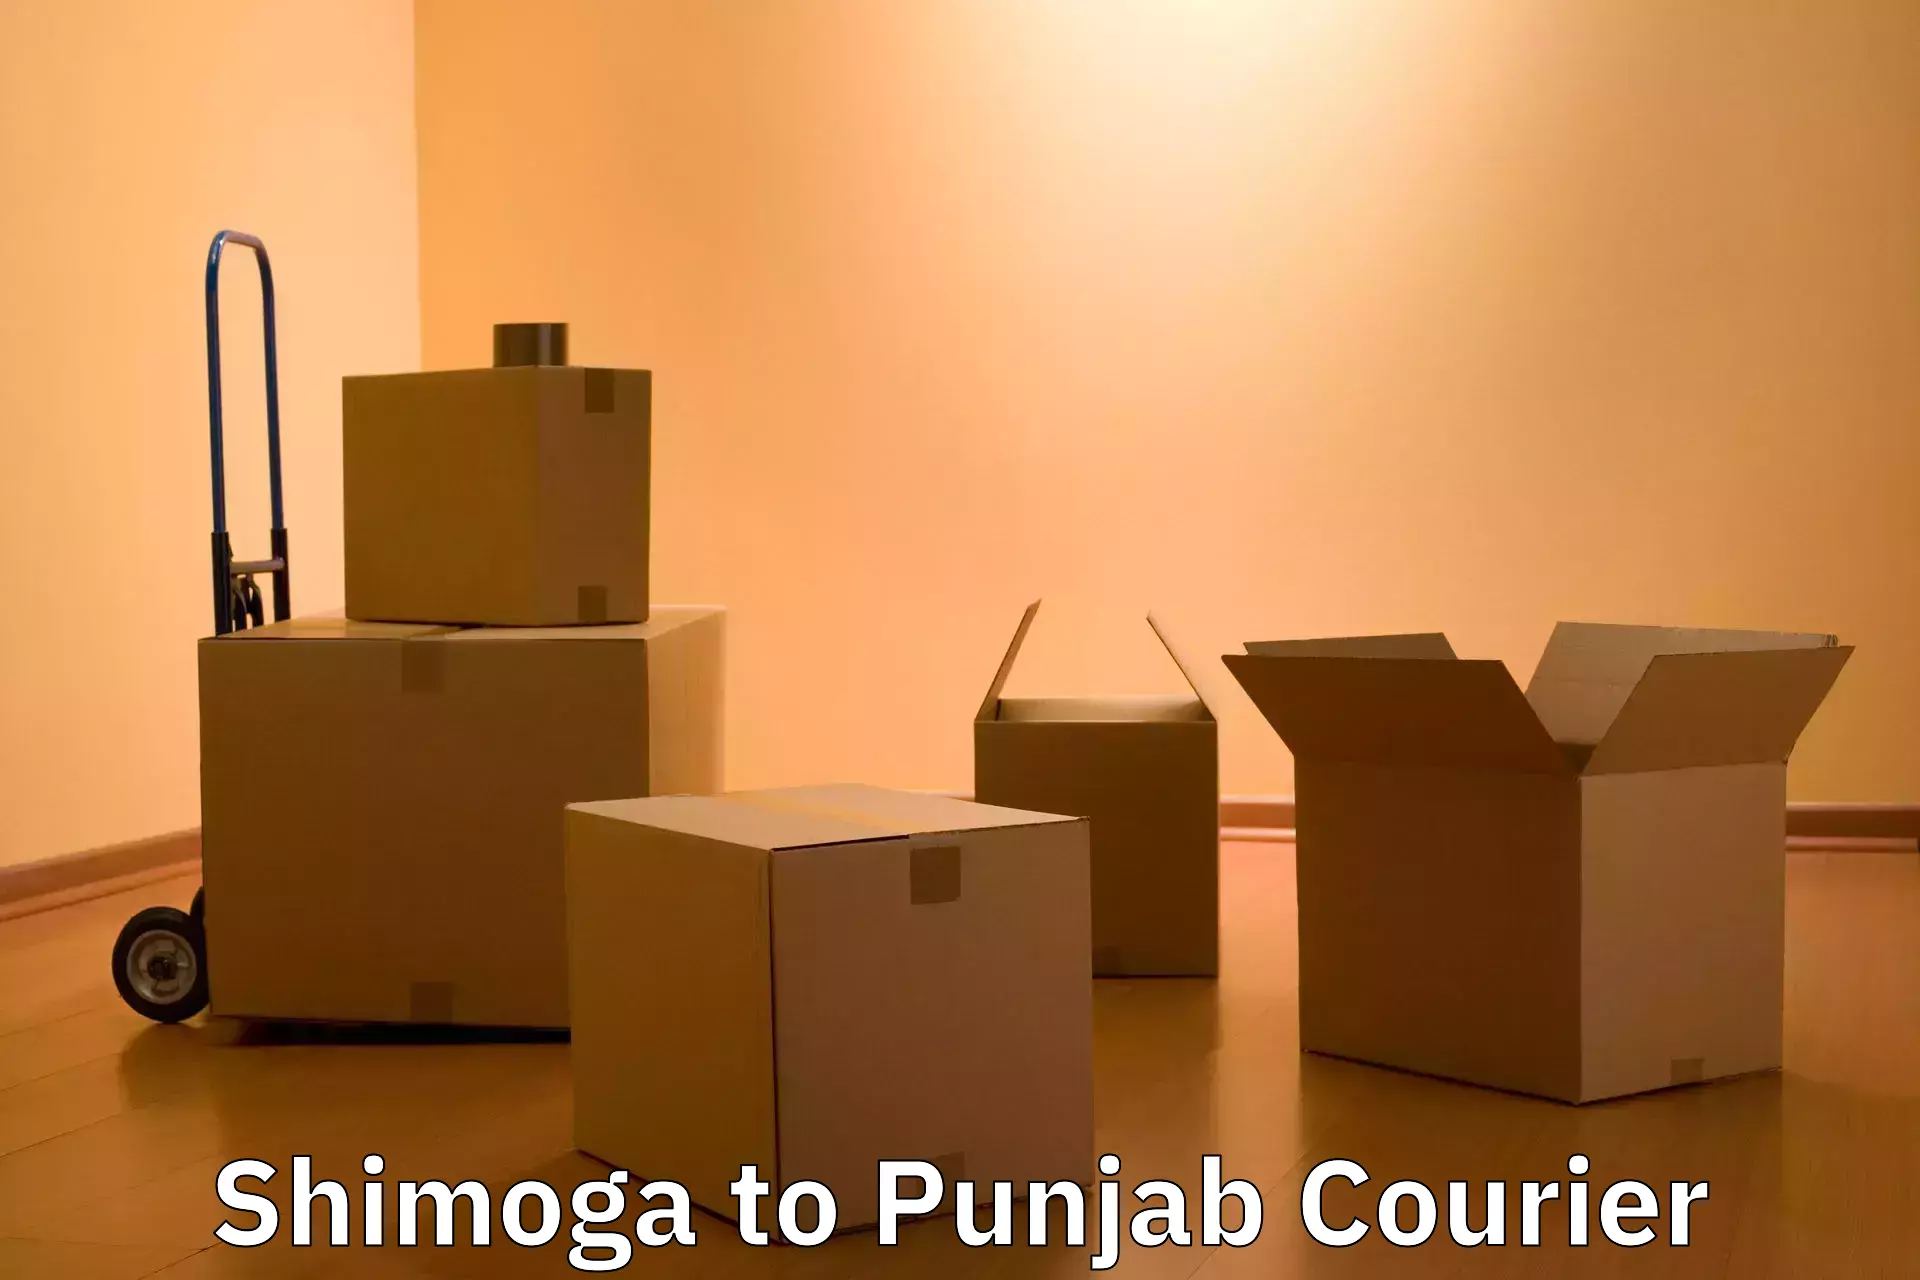 Luggage delivery estimate Shimoga to Central University of Punjab Bathinda